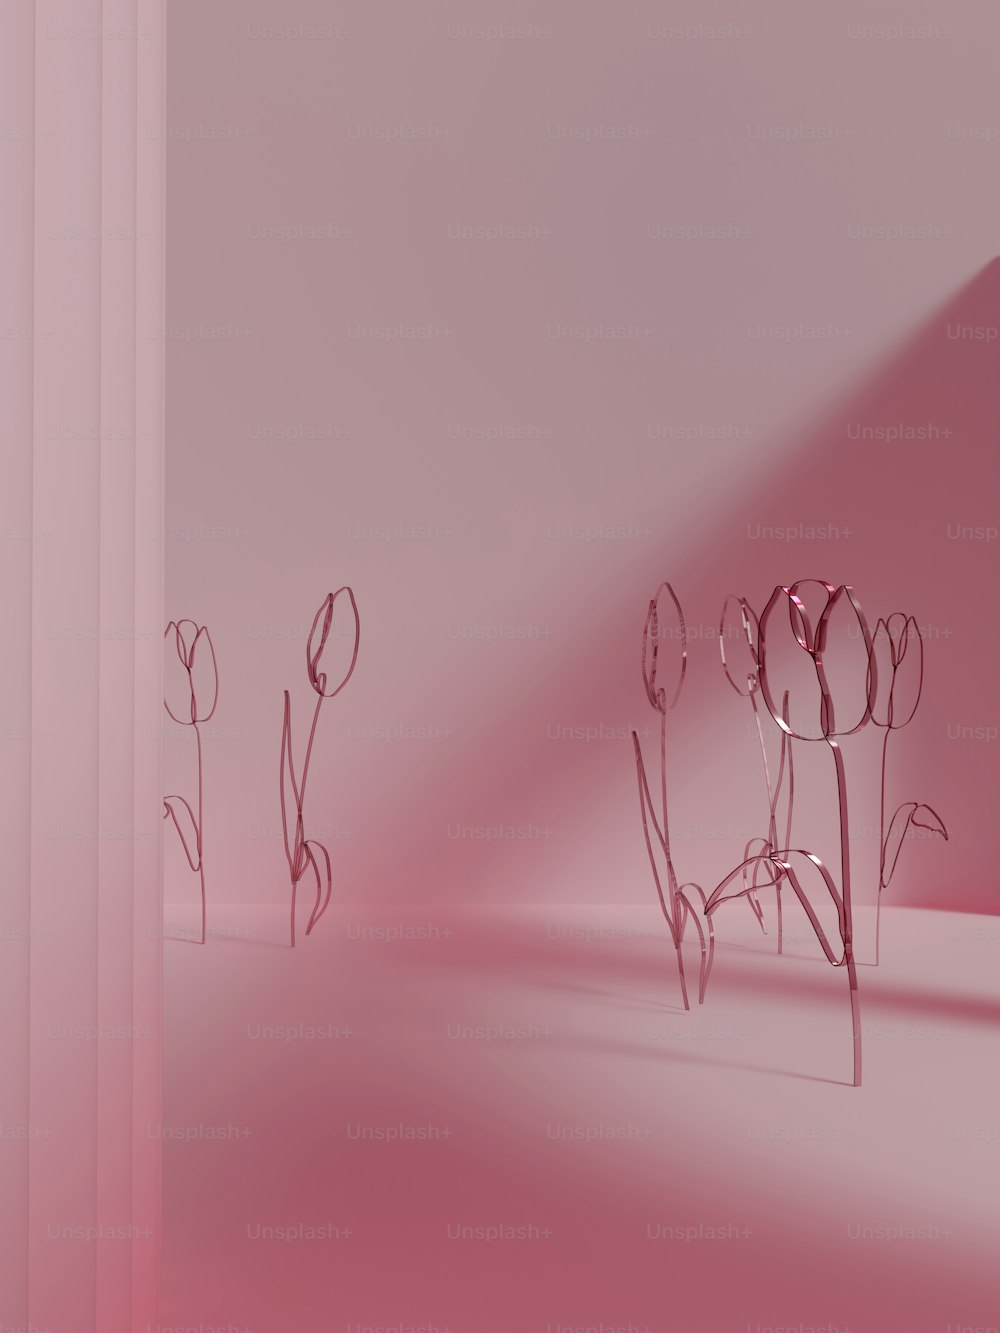 隅に花が咲くピンクの部屋